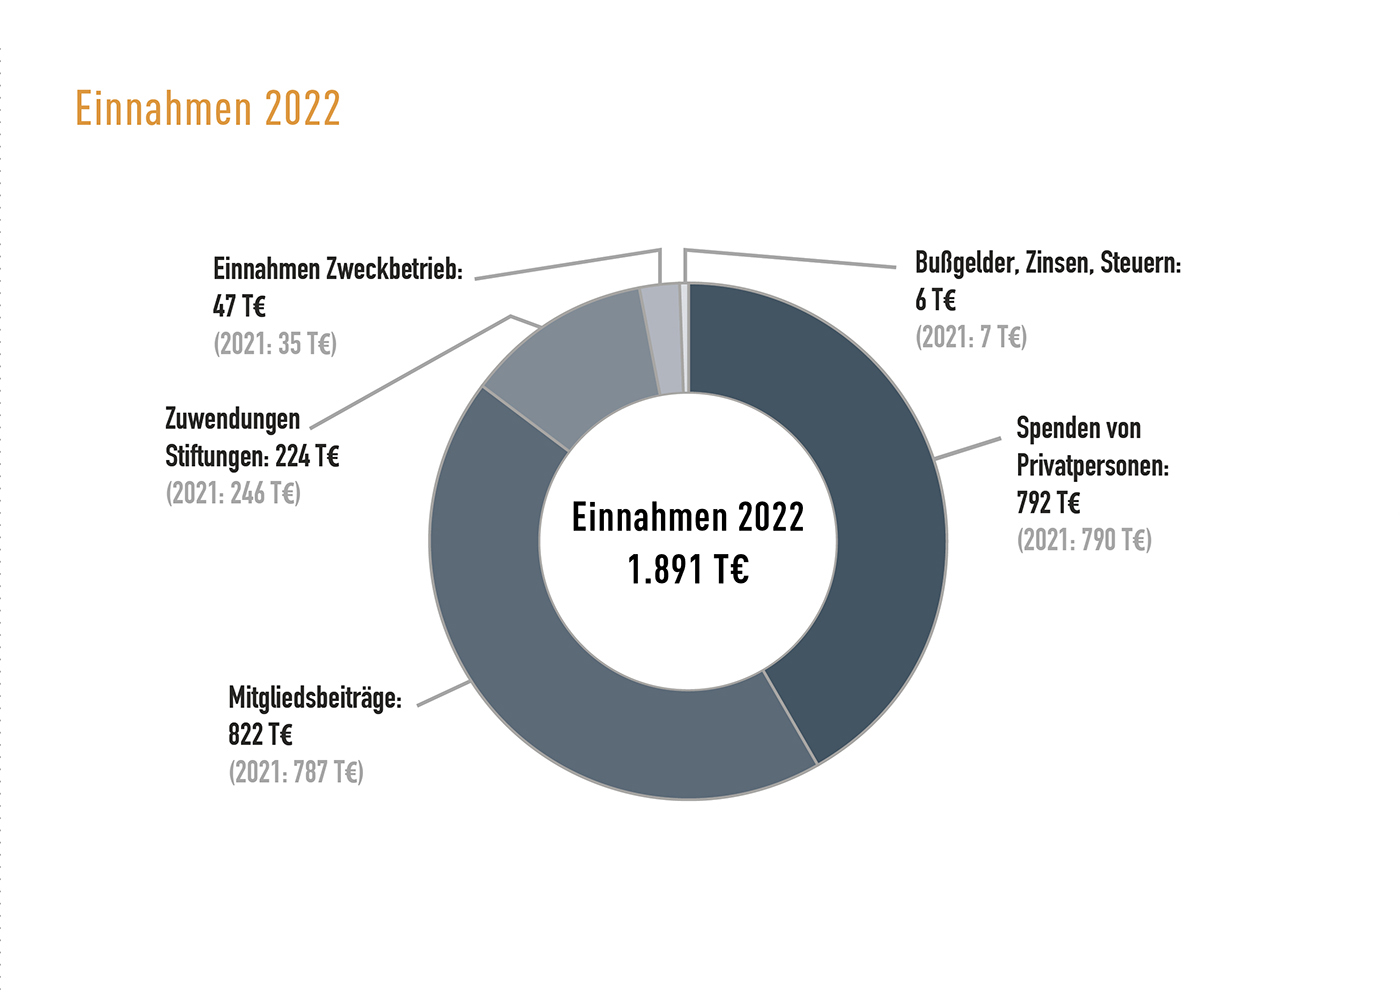 Finanzbericht 2022: Überblick zu den Einnahmen